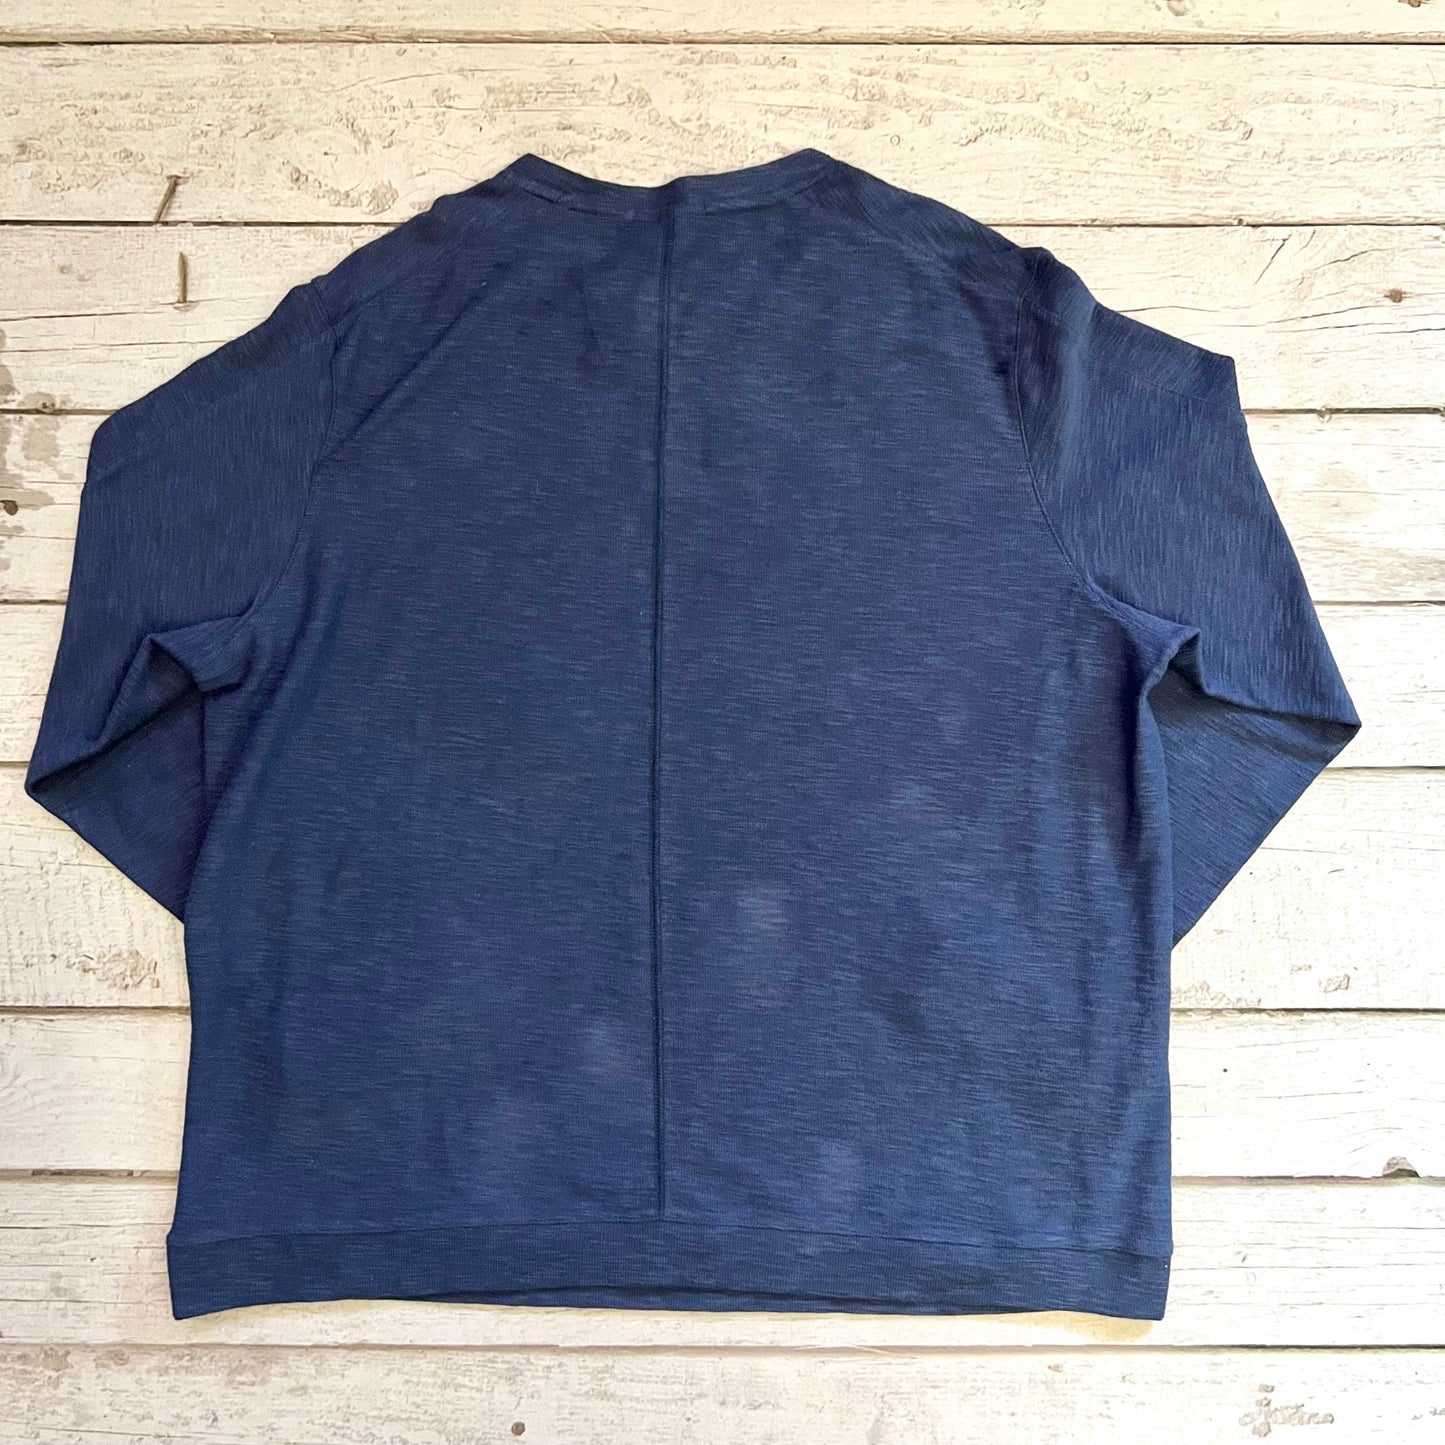 Sweatshirt Crewneck By Nike Apparel  Size: Xxl